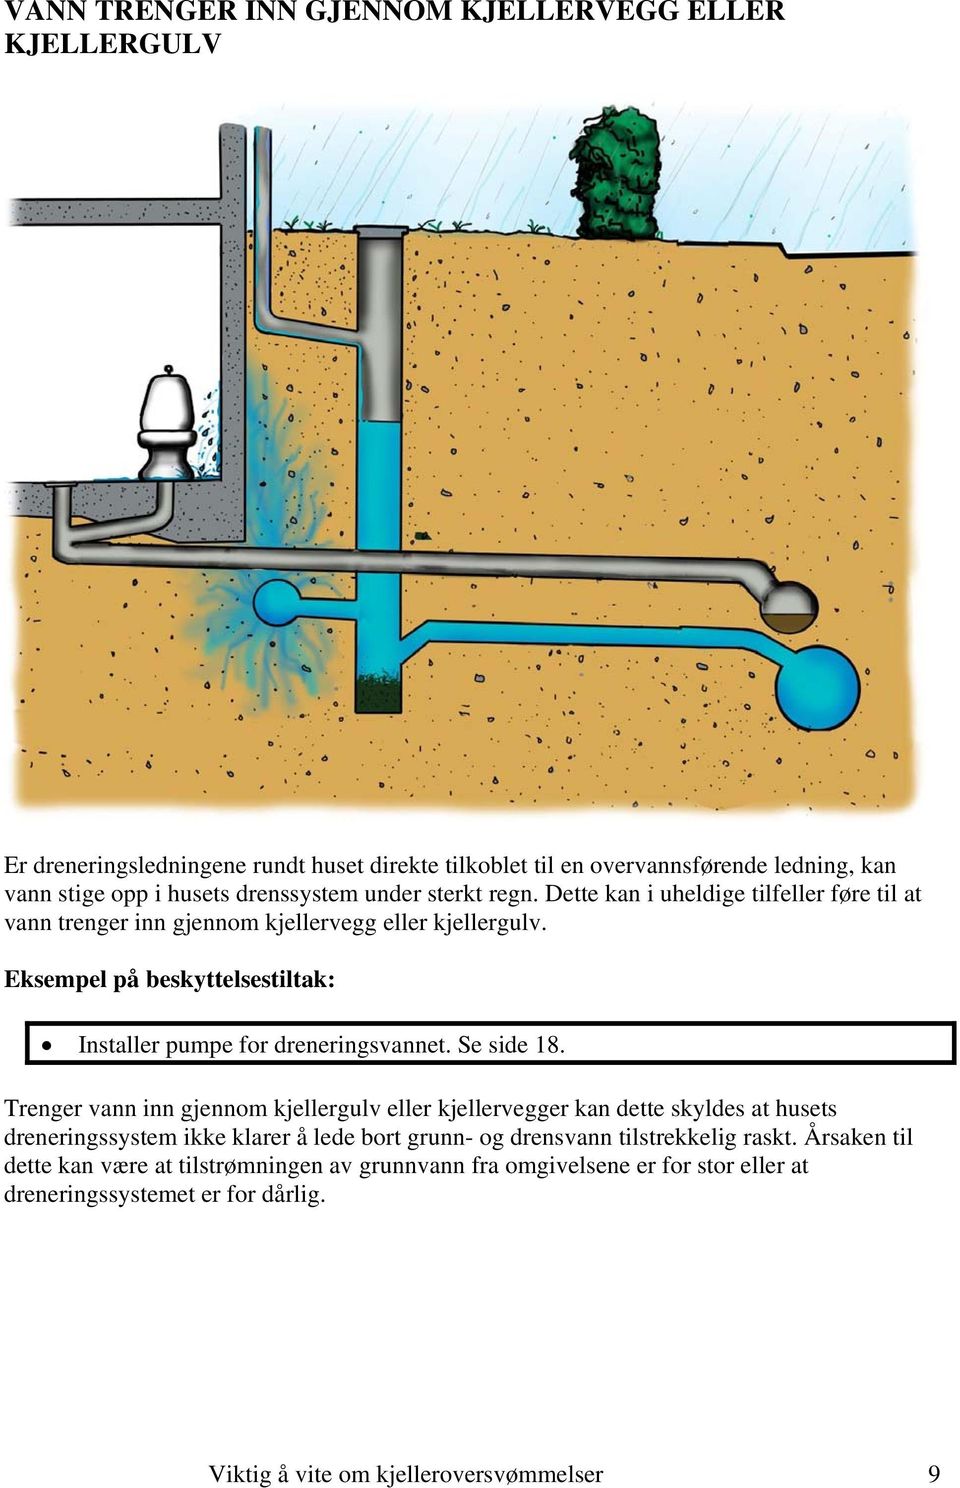 Eksempel på beskyttelsestiltak: Installer pumpe for dreneringsvannet. Se side 18.